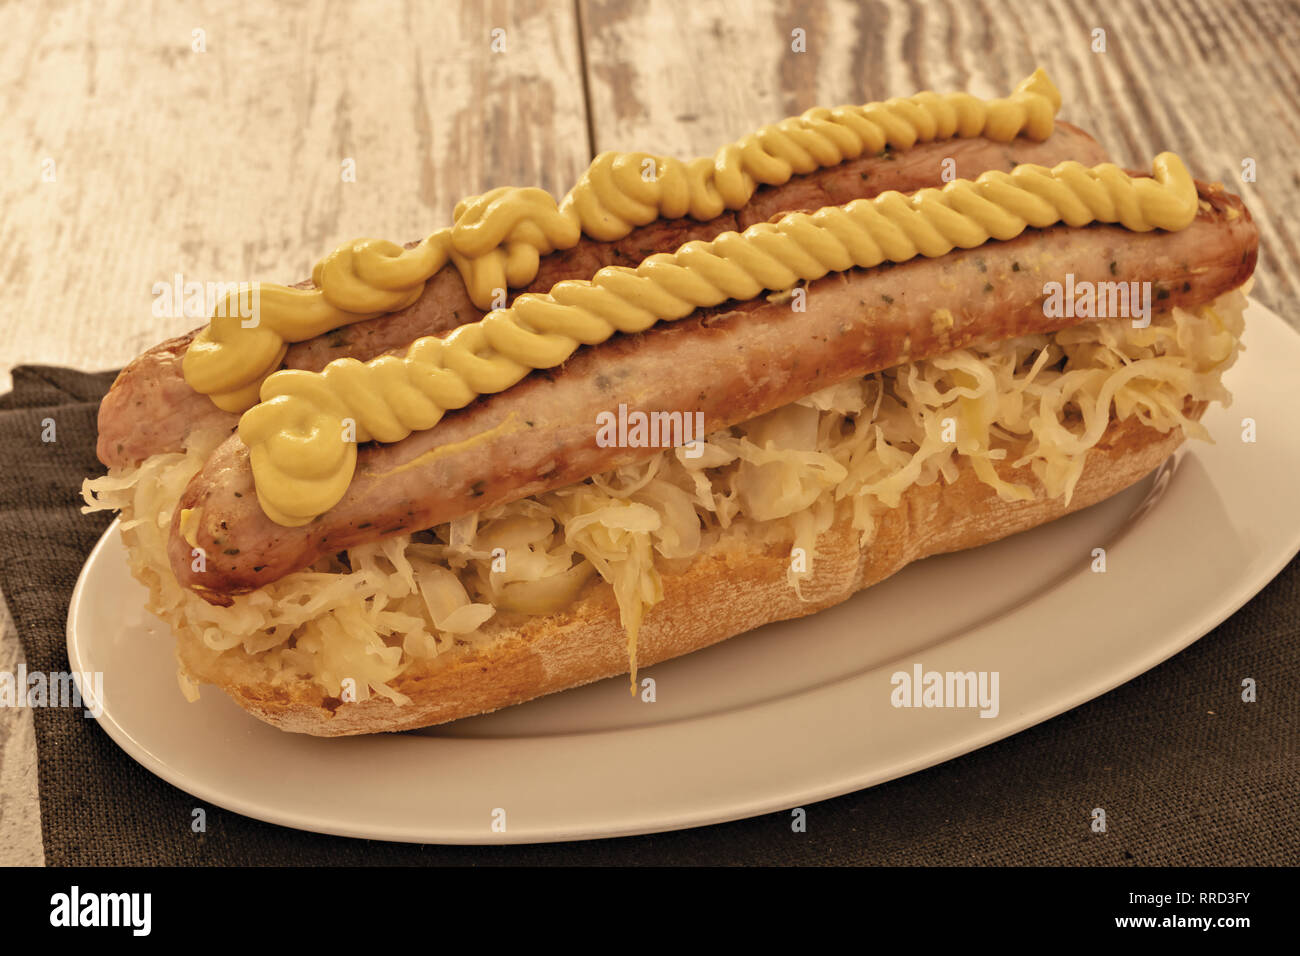 wurstel e crauti panino con salsa barbecue fronte Stock Photo - Alamy